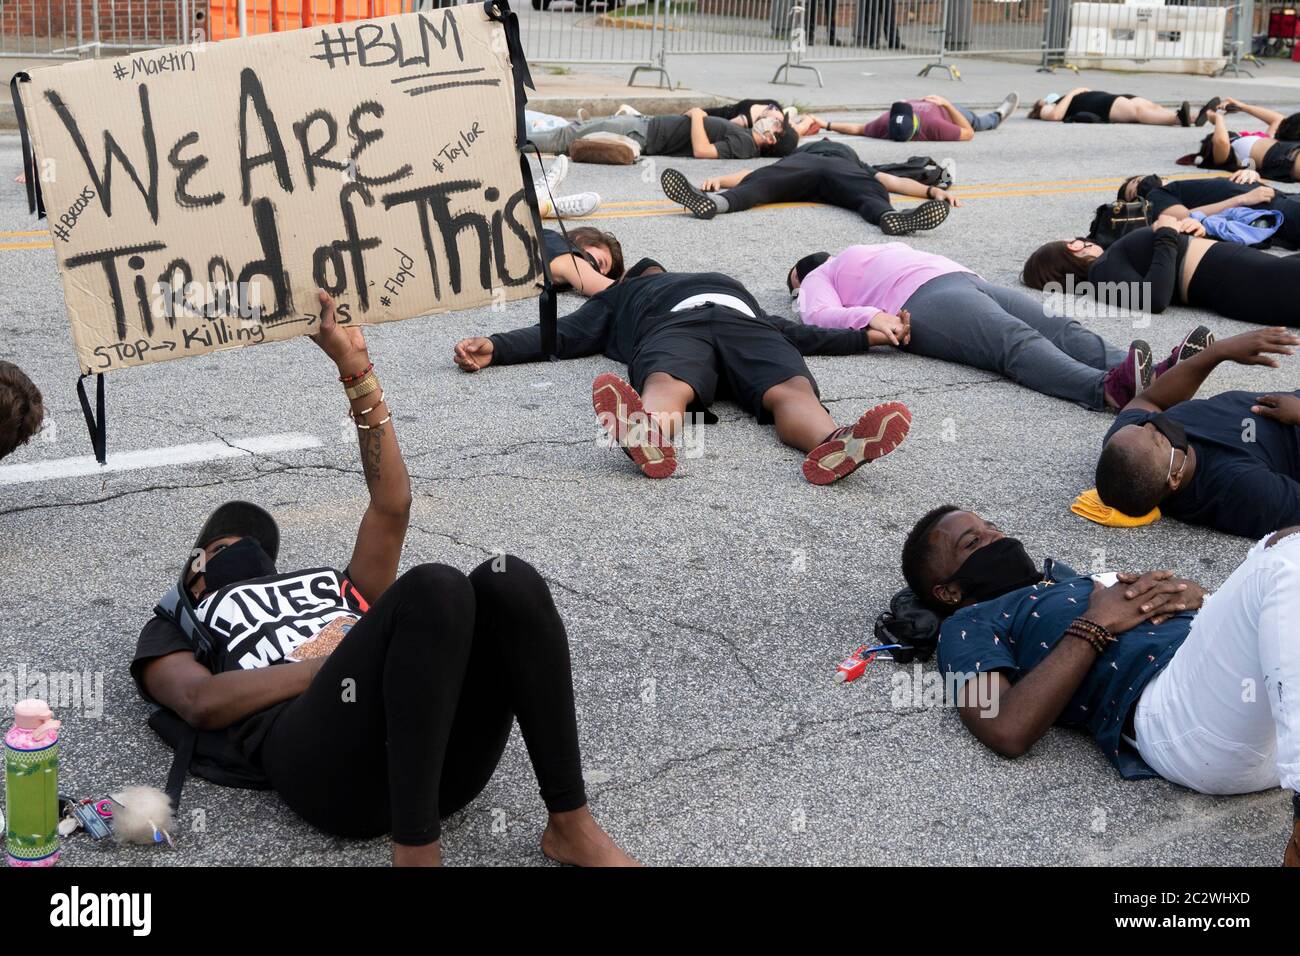 Atlanta, EE.UU. 17 de junio de 2020. El manifestante tiene un cartel fuera de la sede de la policía en Atlanta, EE.UU., que dice: "Estamos cansados de esto", refiriéndose a las injusticias contra los negros por parte de la policía. Crédito: Micah Casella/Alamy Live News. Foto de stock